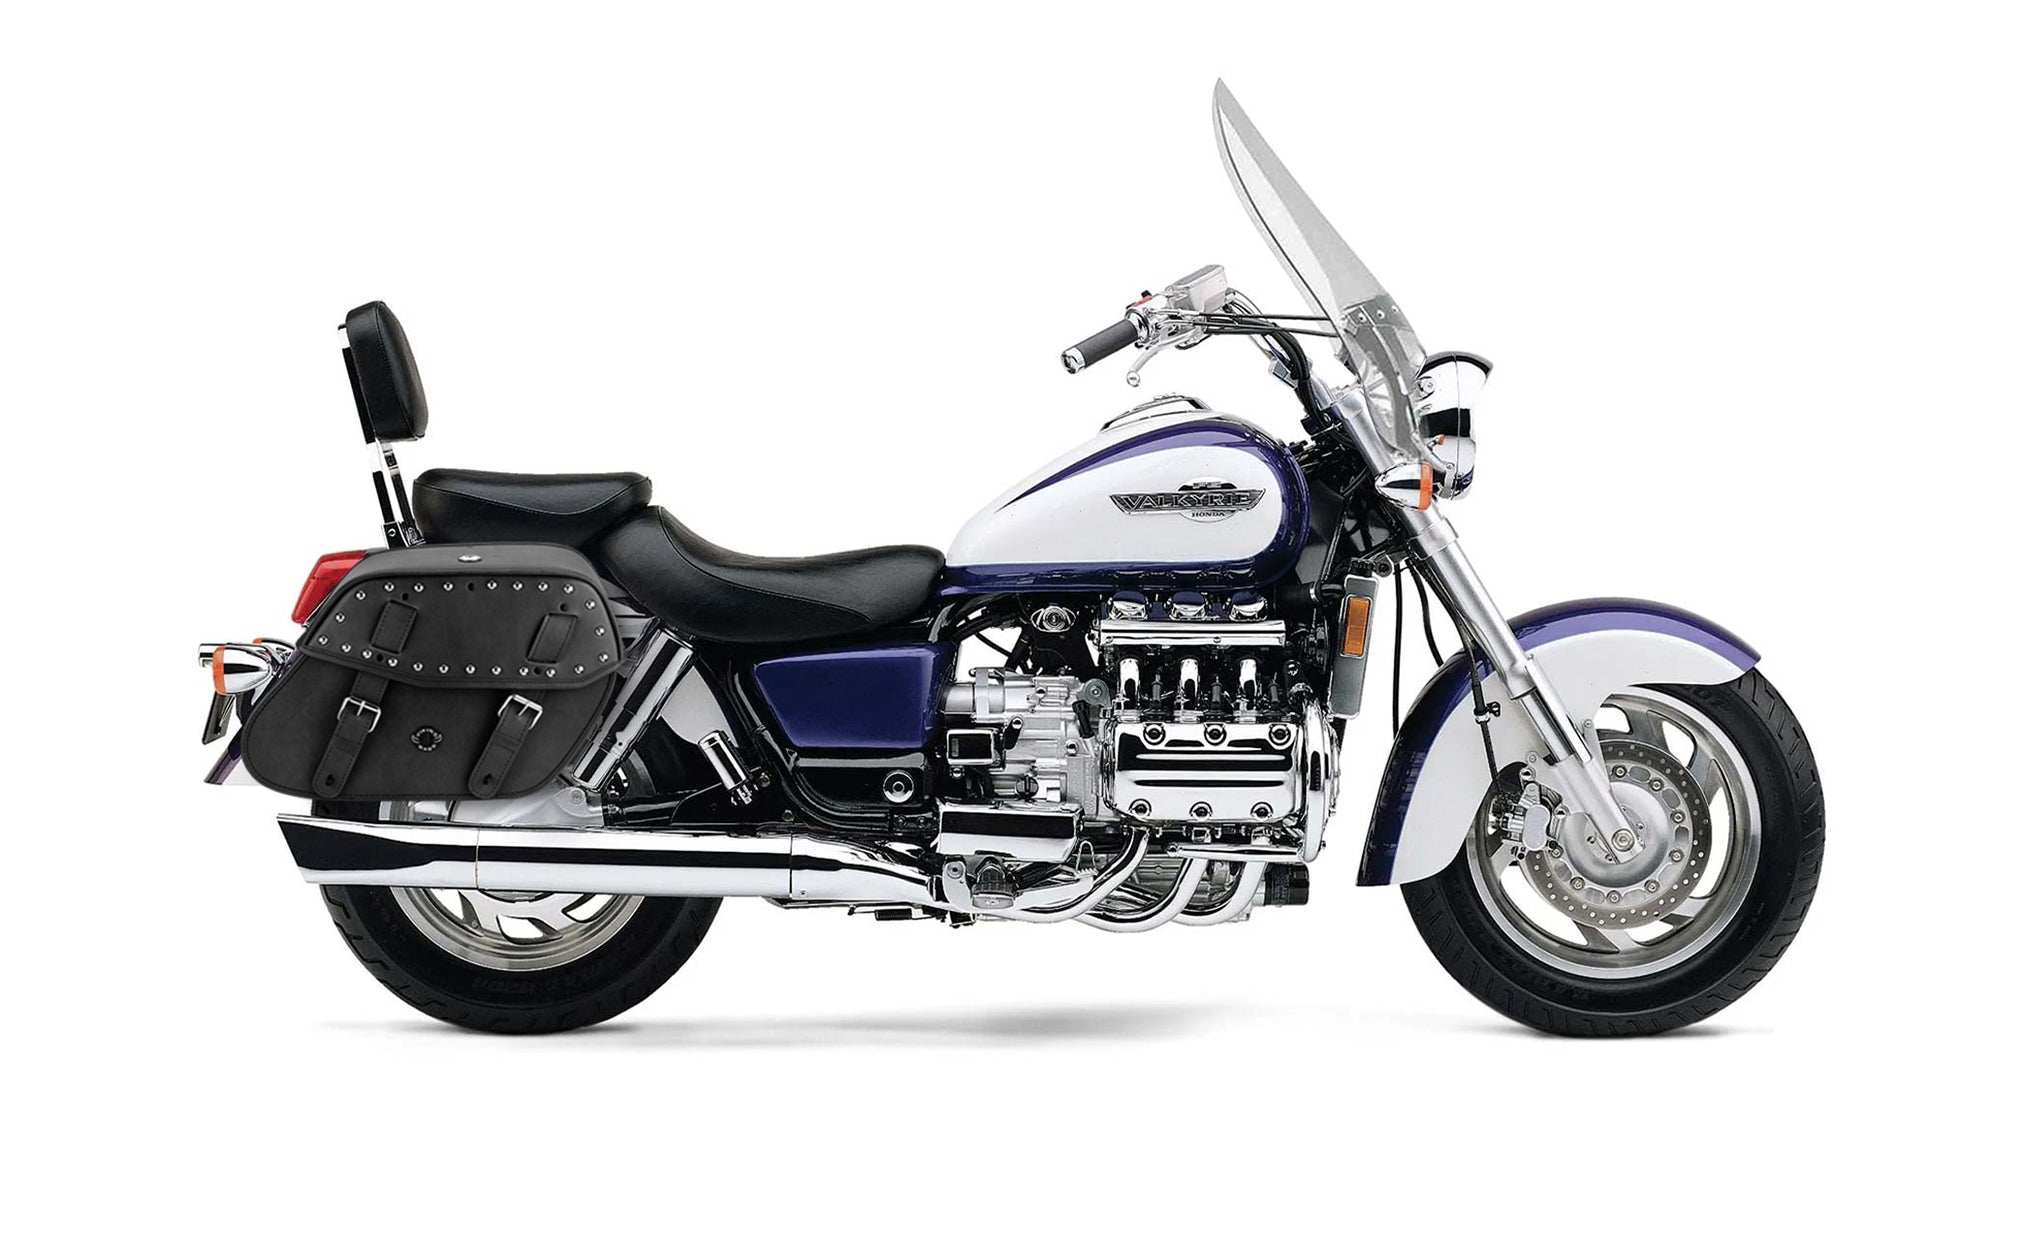 Viking Odin Large Honda Valkyrie 1500 Tourer Leather Studded Motorcycle Saddlebags on Bike Photo @expand